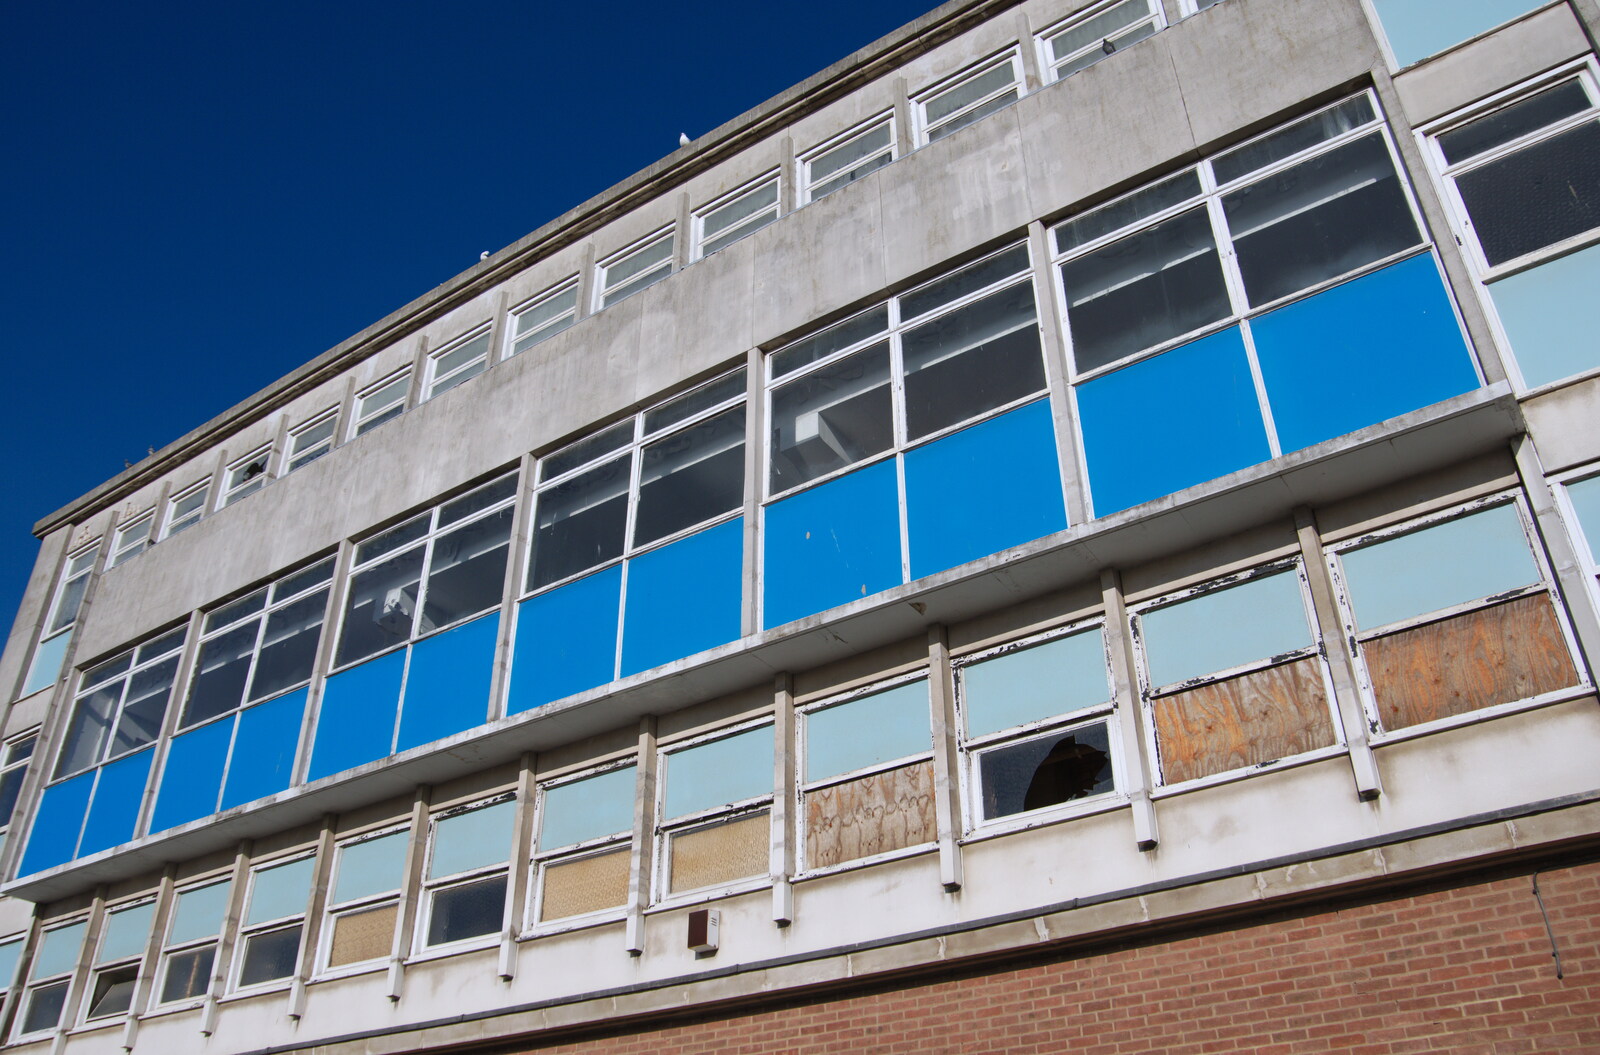 Broken windows from Exam Day Dereliction, Ipswich, Suffolk - 13th November 2019